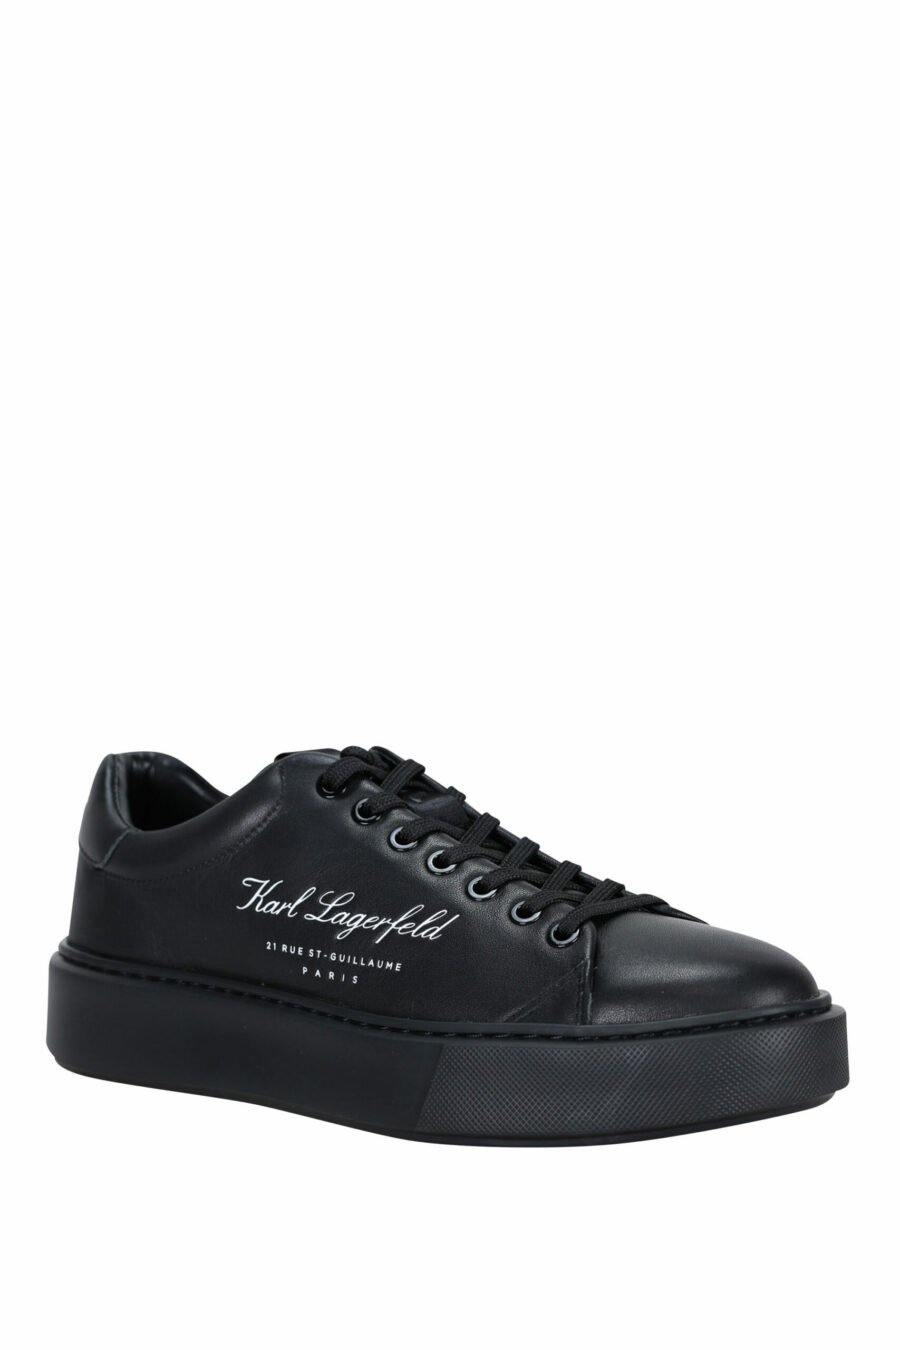 Zapatillas negras " maxi kup" con logo firma blanco y suela negra - 5059529325885 1 scaled